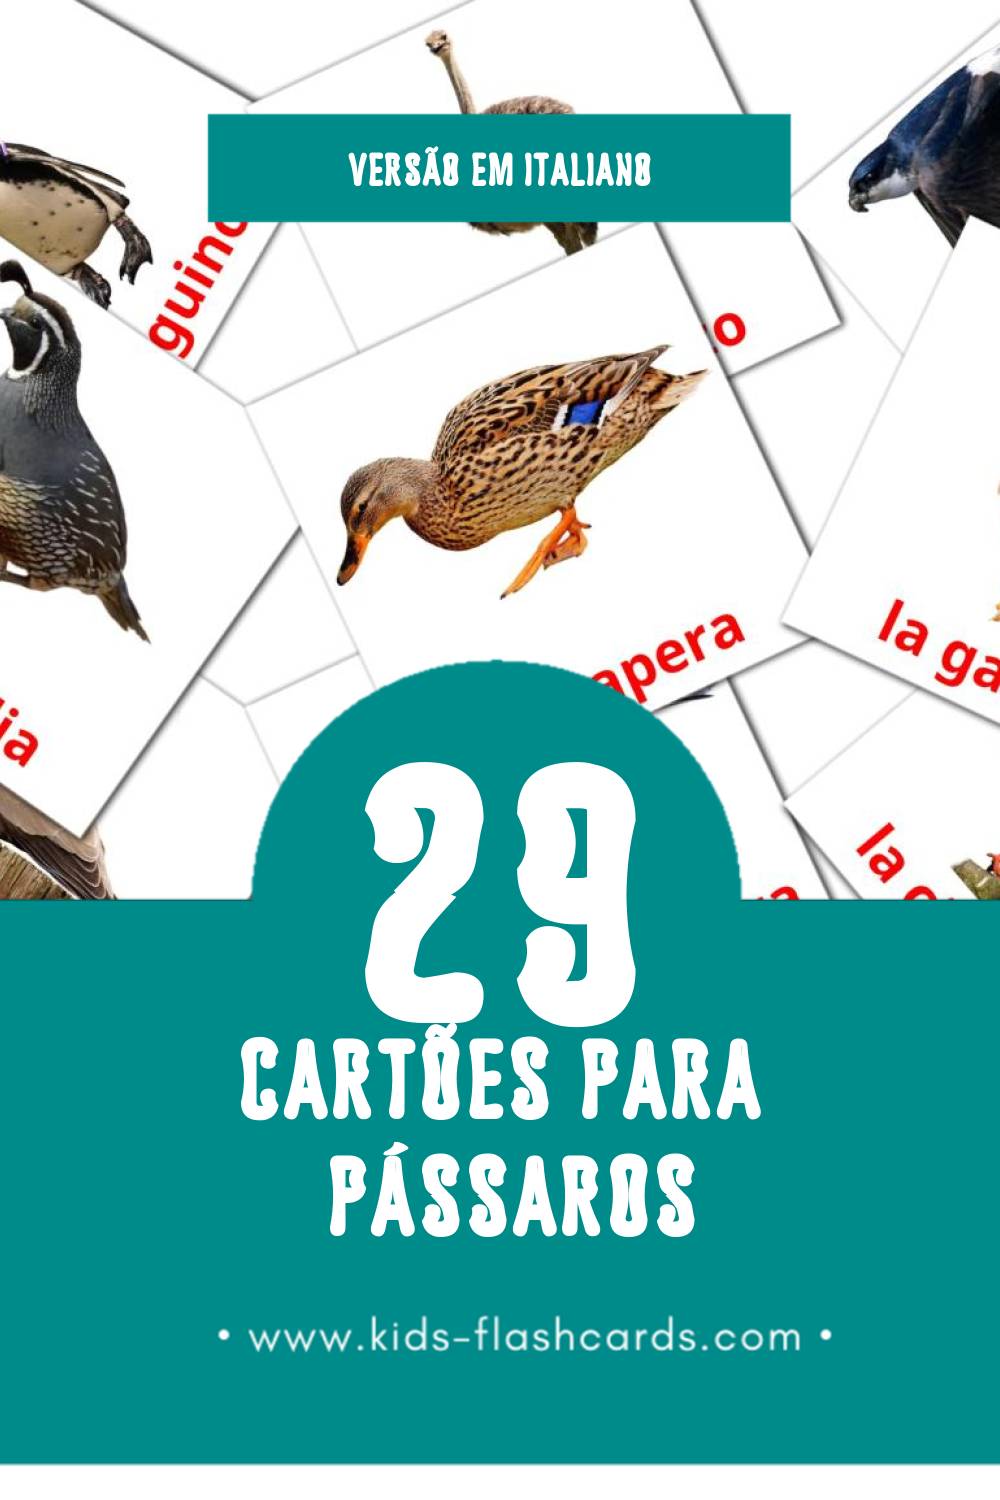 Flashcards de Uccelli Visuais para Toddlers (29 cartões em Italiano)